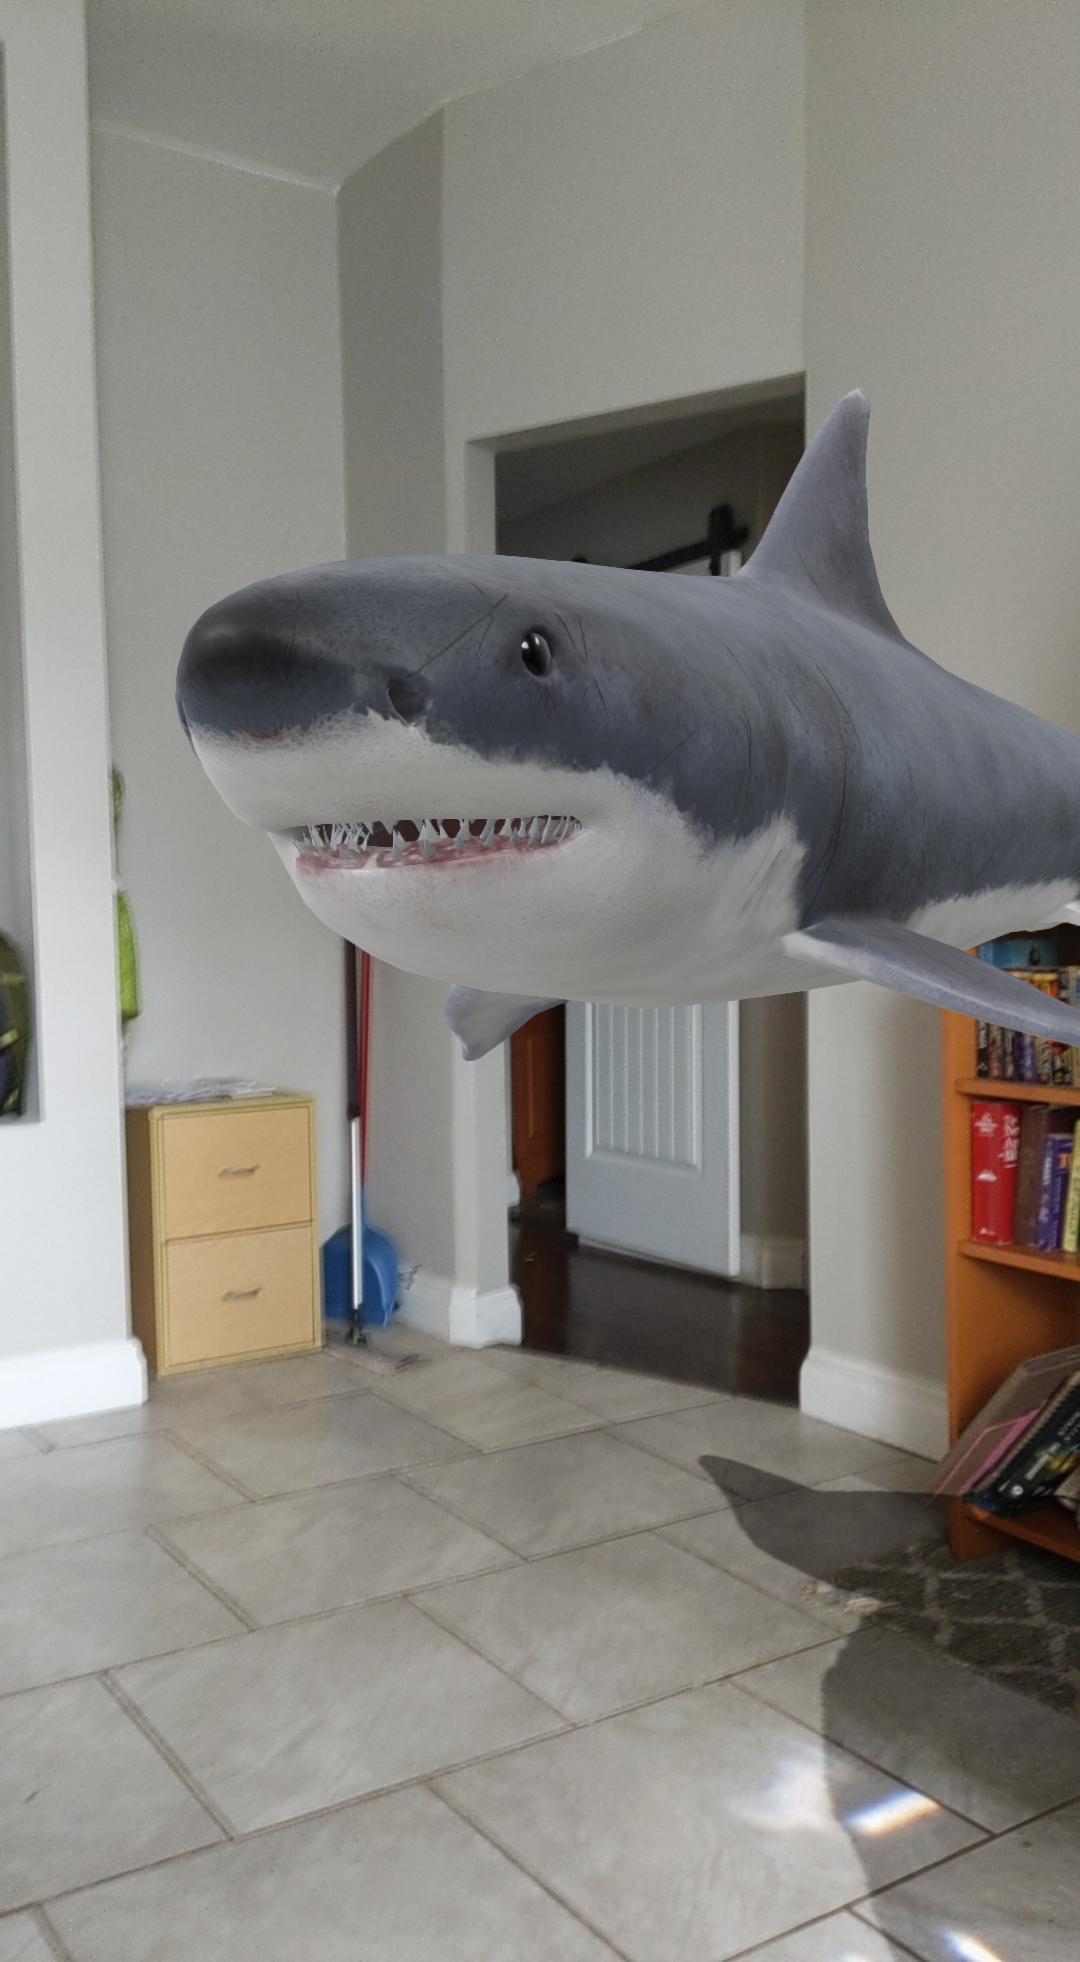 An AR shark in a house.